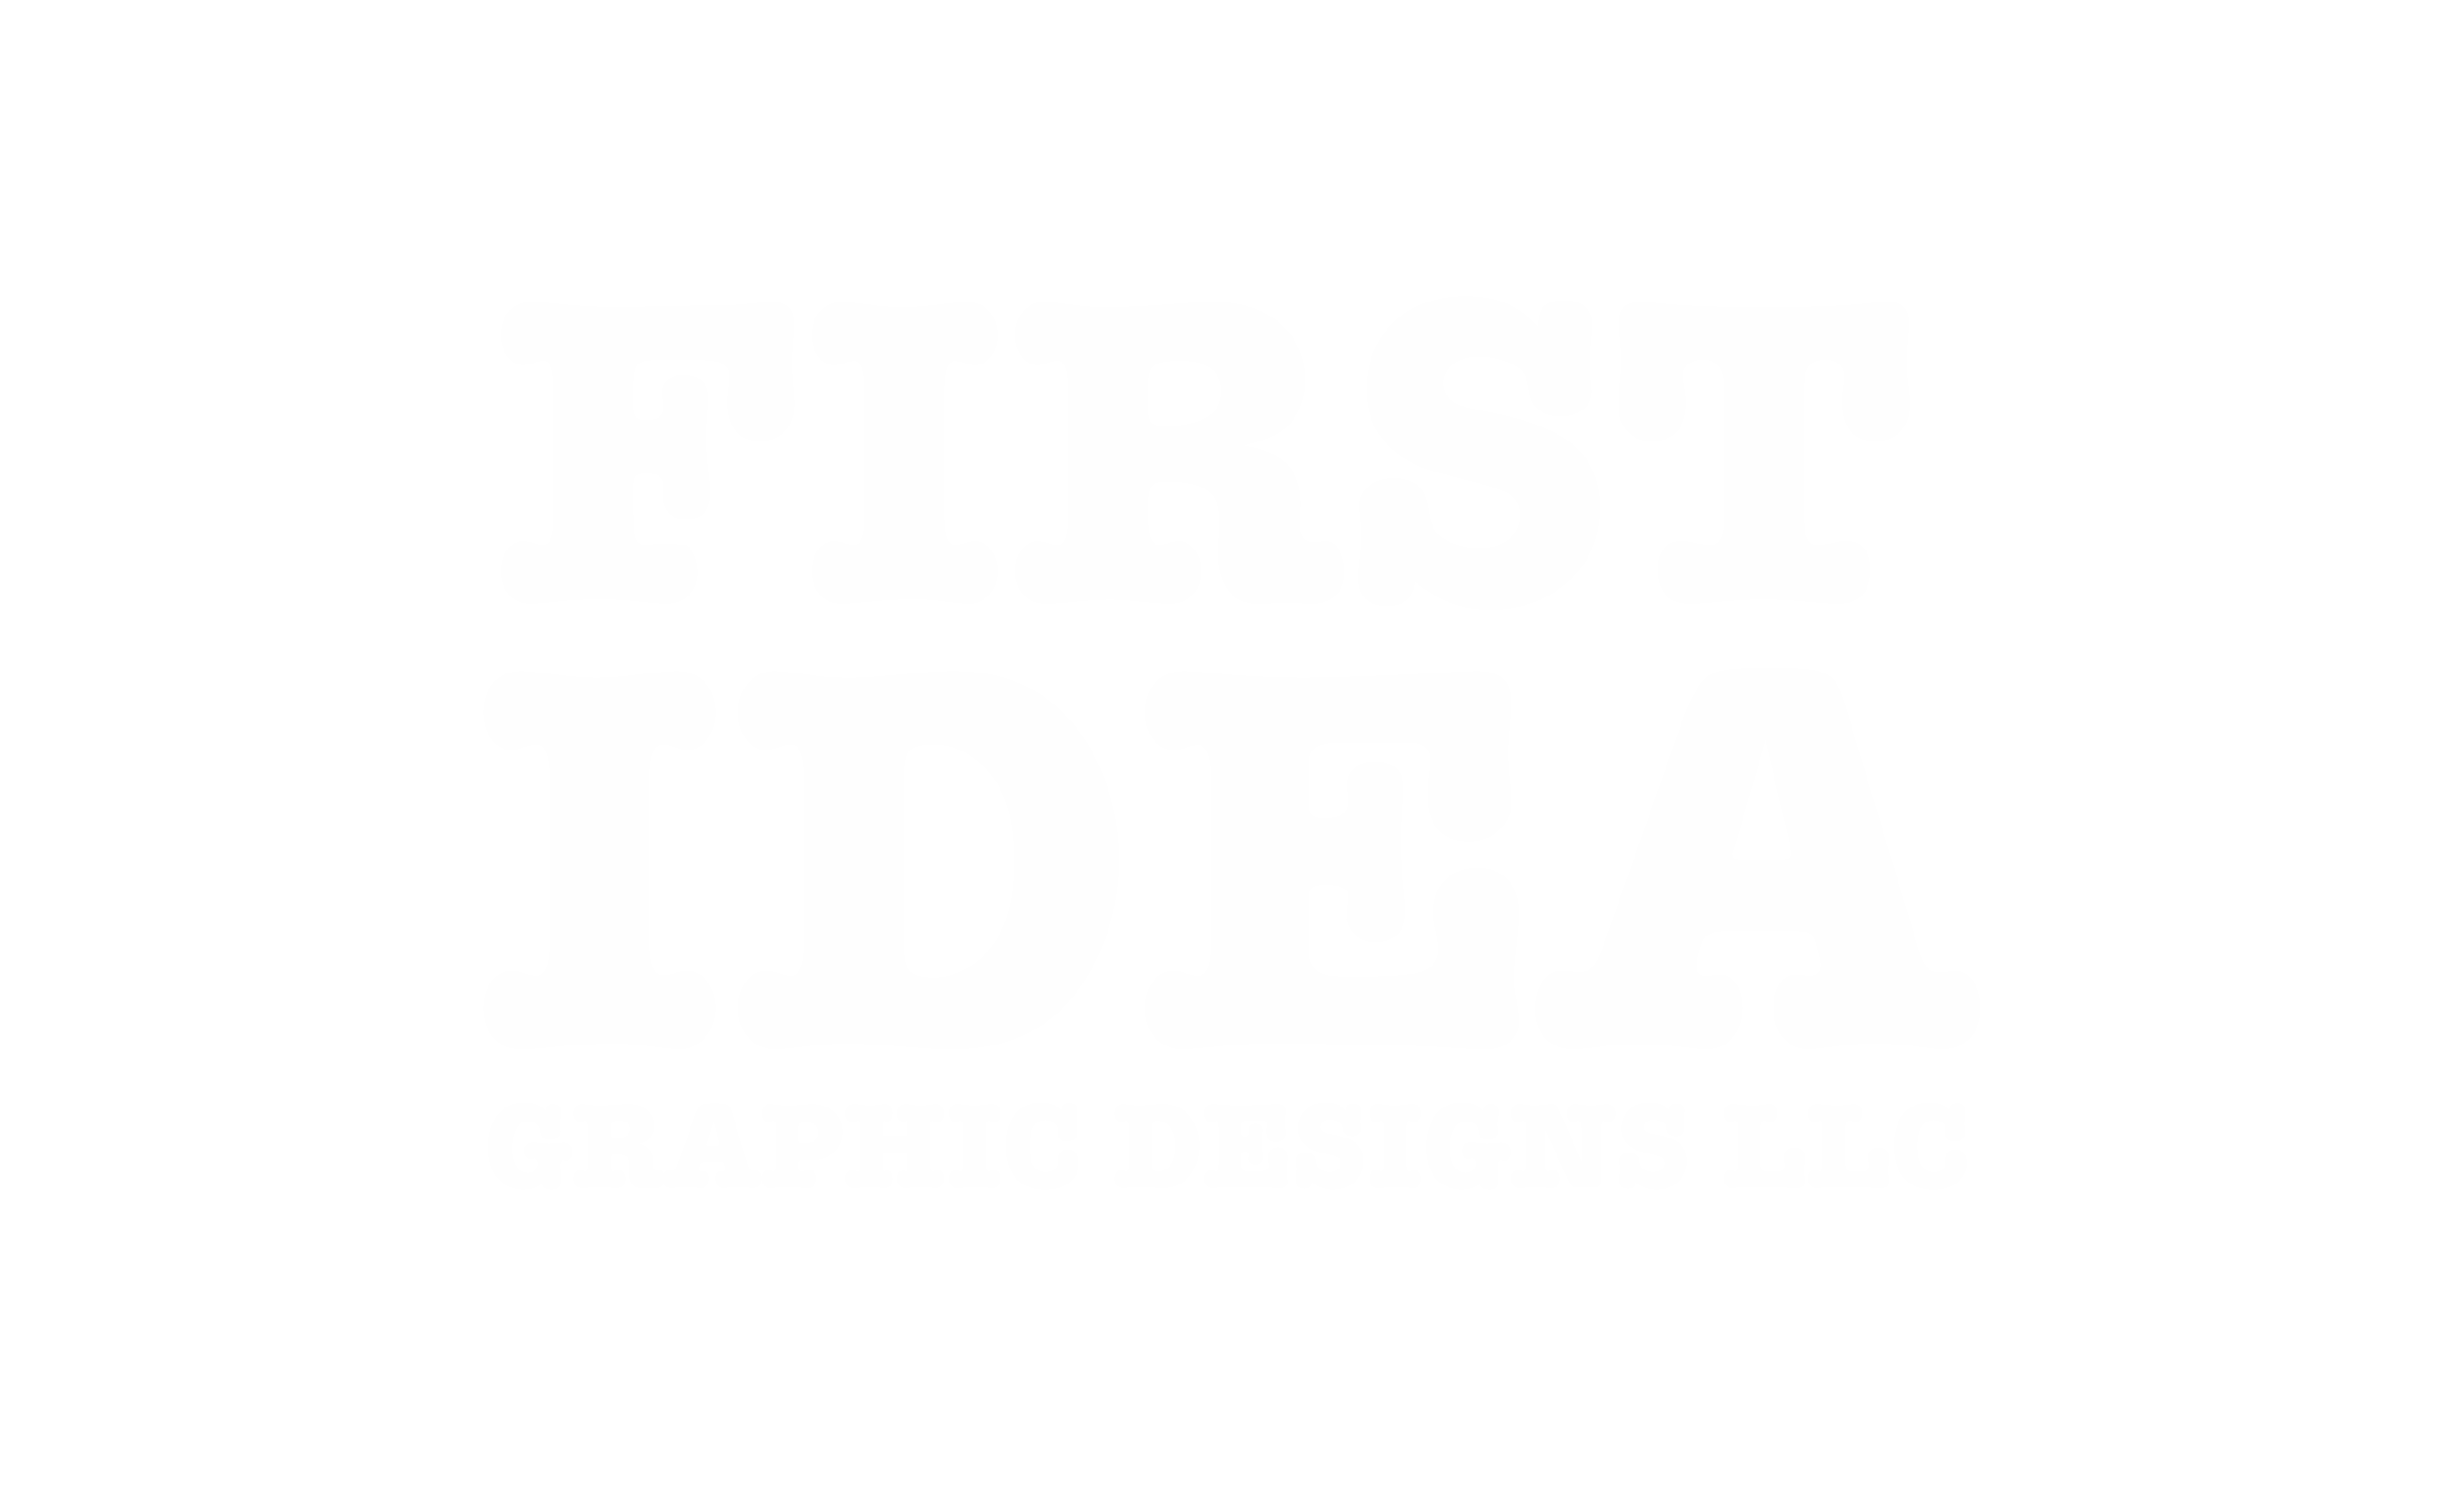 First Idea